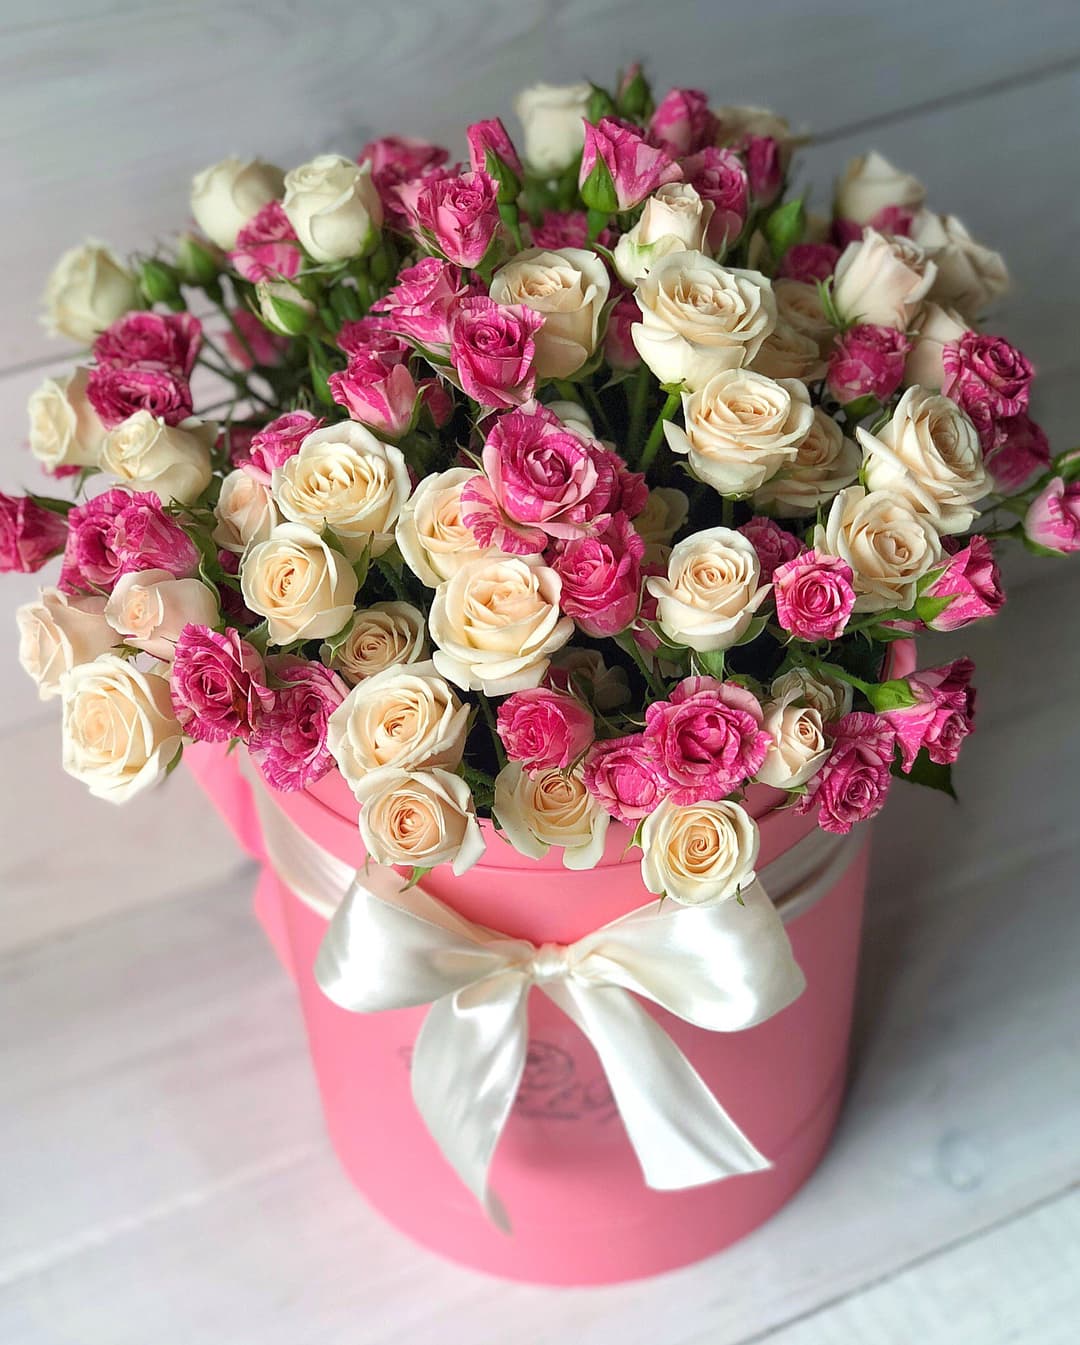 С днем рождения цветы красивые для женщины - фото и картинки adm-yabl.ru